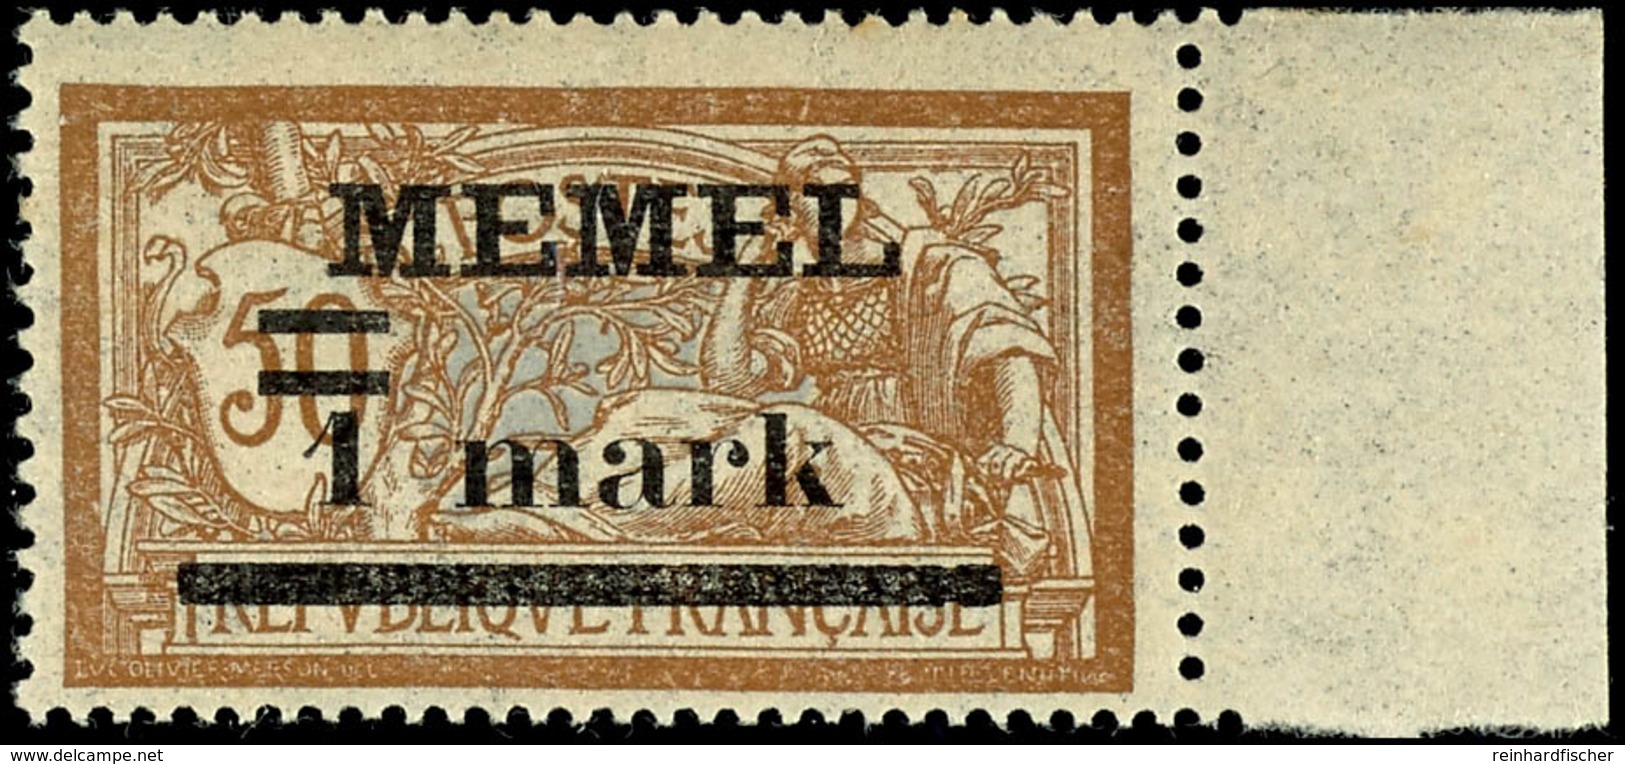 1 Mark Auf 50 Centimes, Postfrisch Vom Rechten Rand Mit Aufdruckfehler "Weiter Abstand Zwischen 1 Und Mark", Kurzbefund  - Memelgebiet 1923